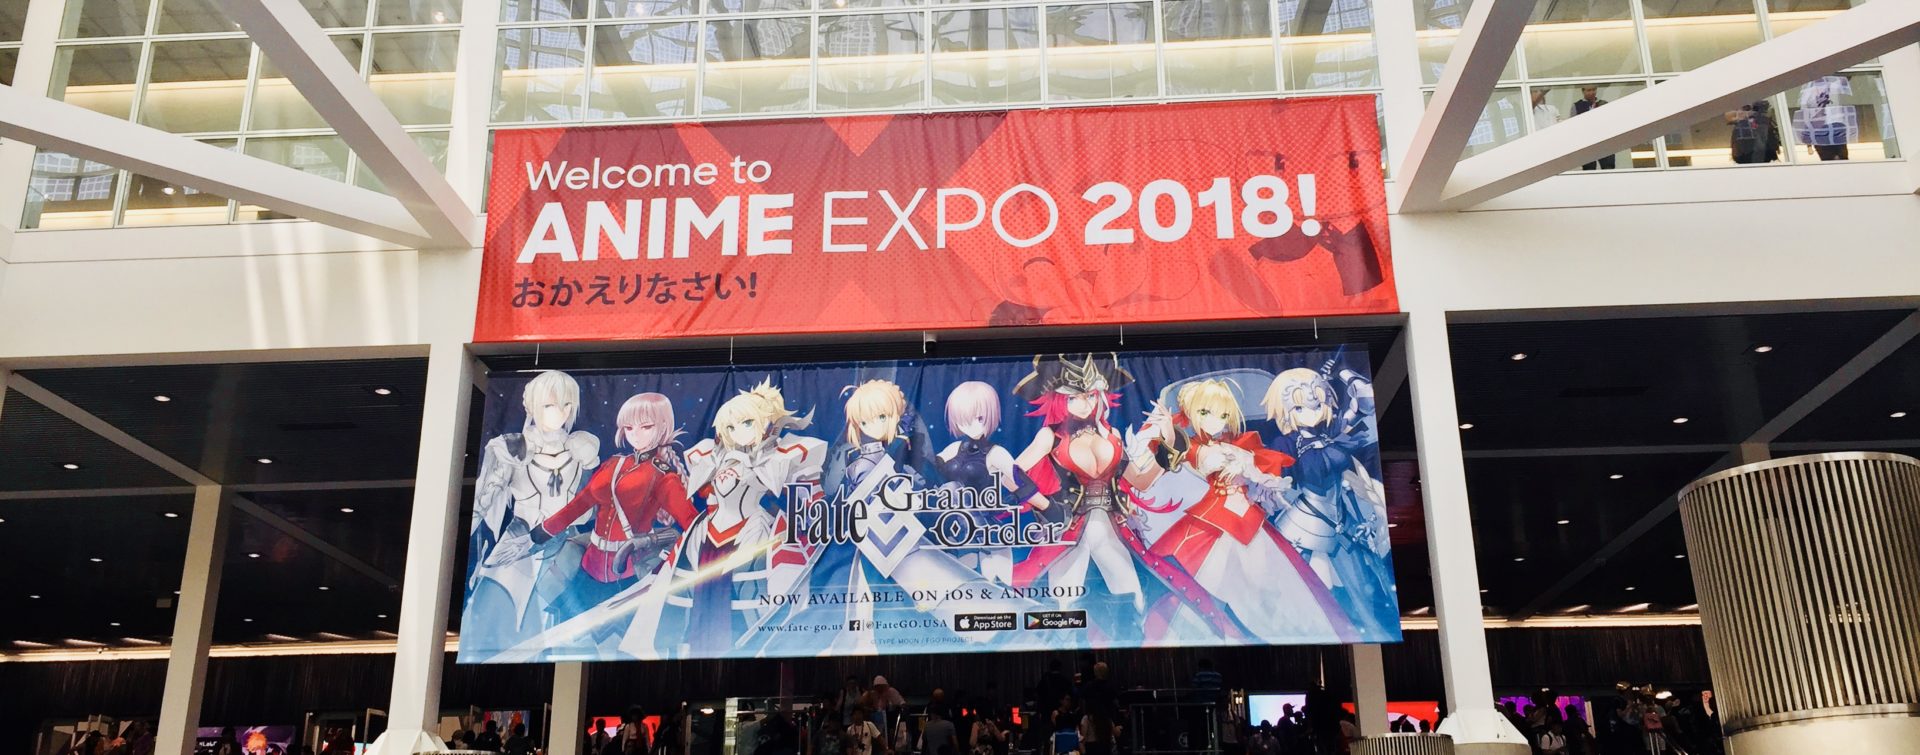 Anime Expo 2015 Premier Fan